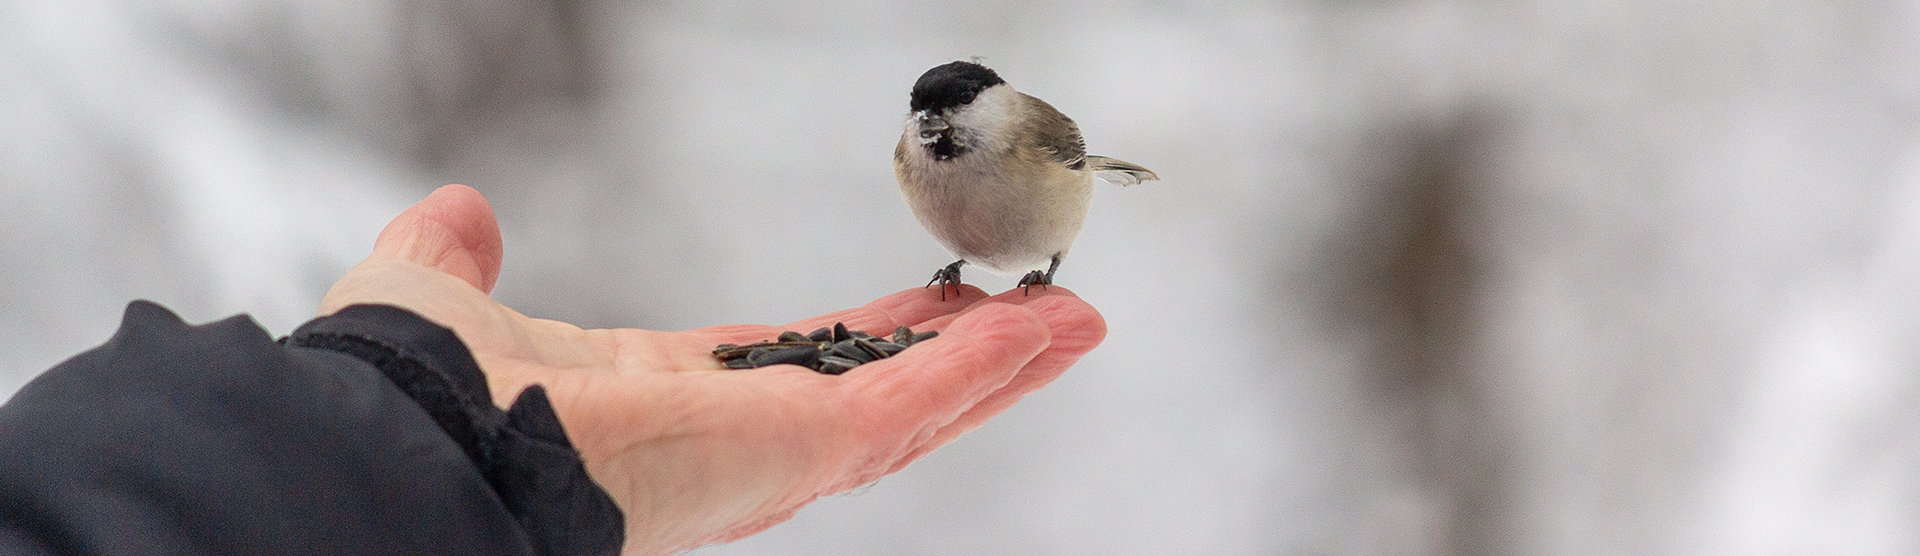 Jak dbać o ptaki zimą?